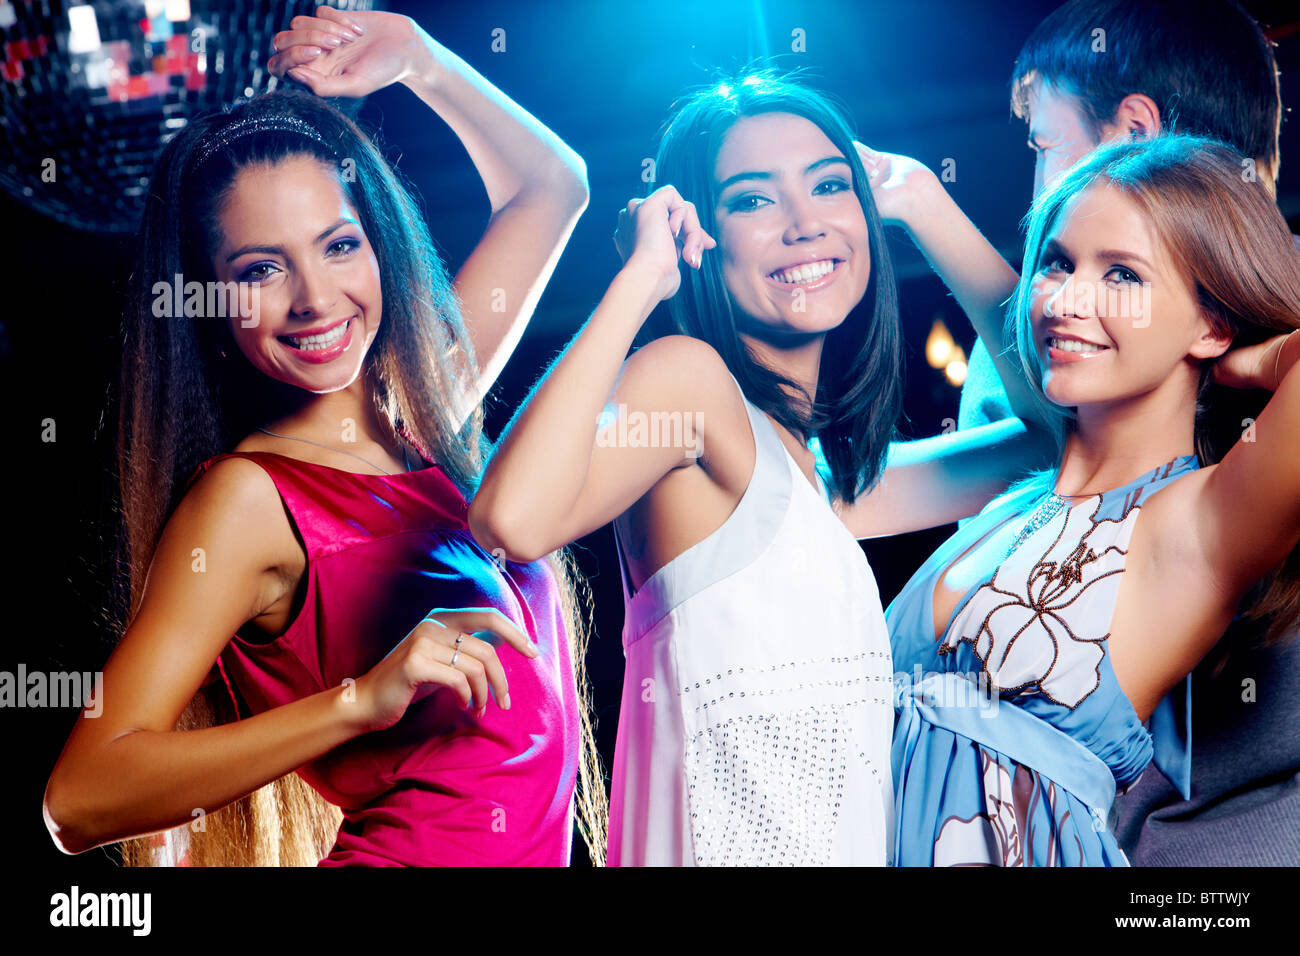 Three glamorous girls enjoying themselves while dancing in night club ...